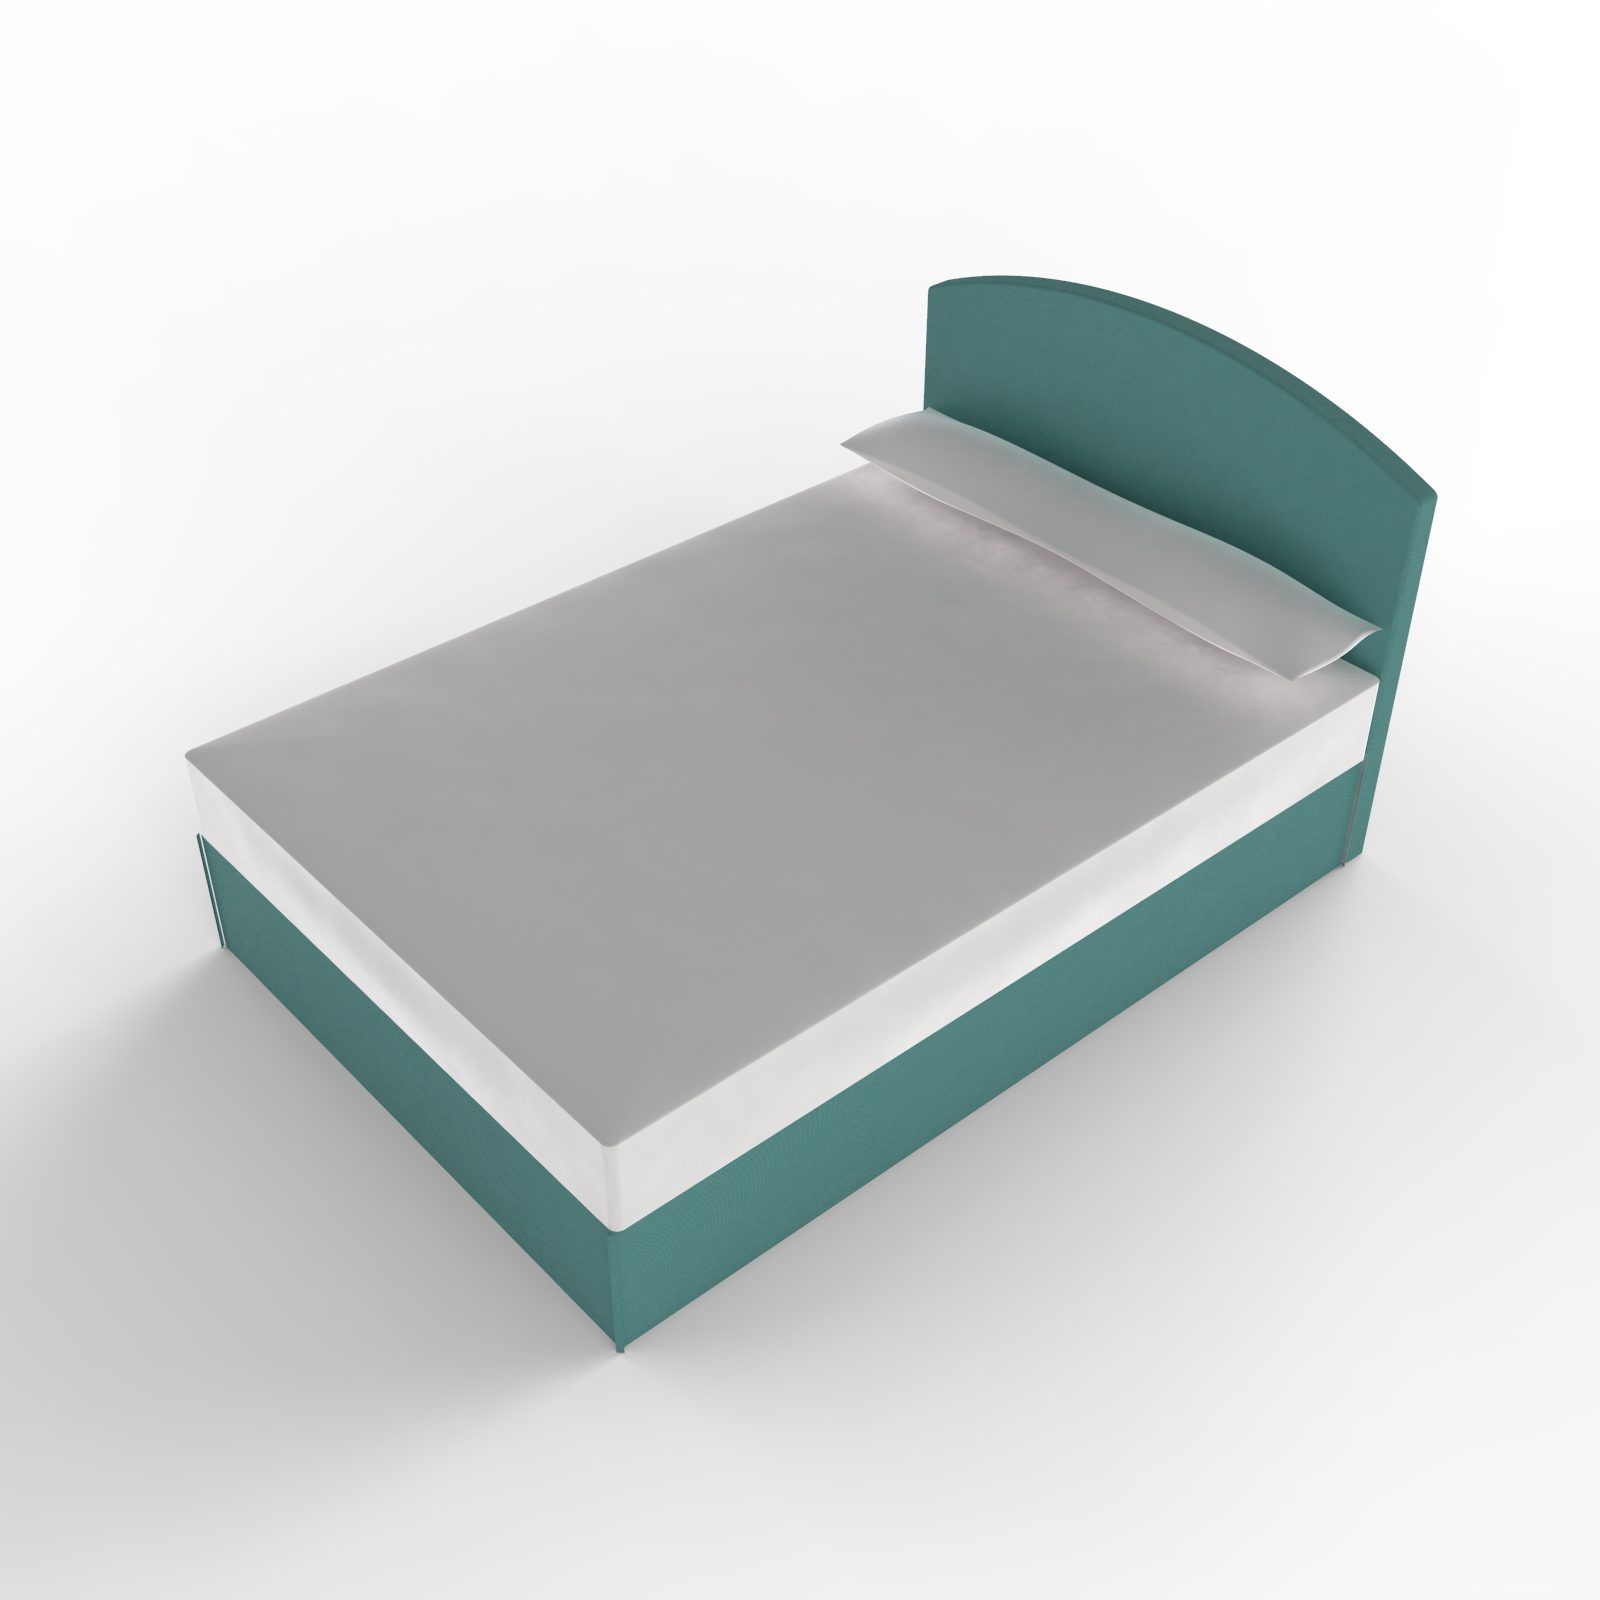 Double bed sldprt model